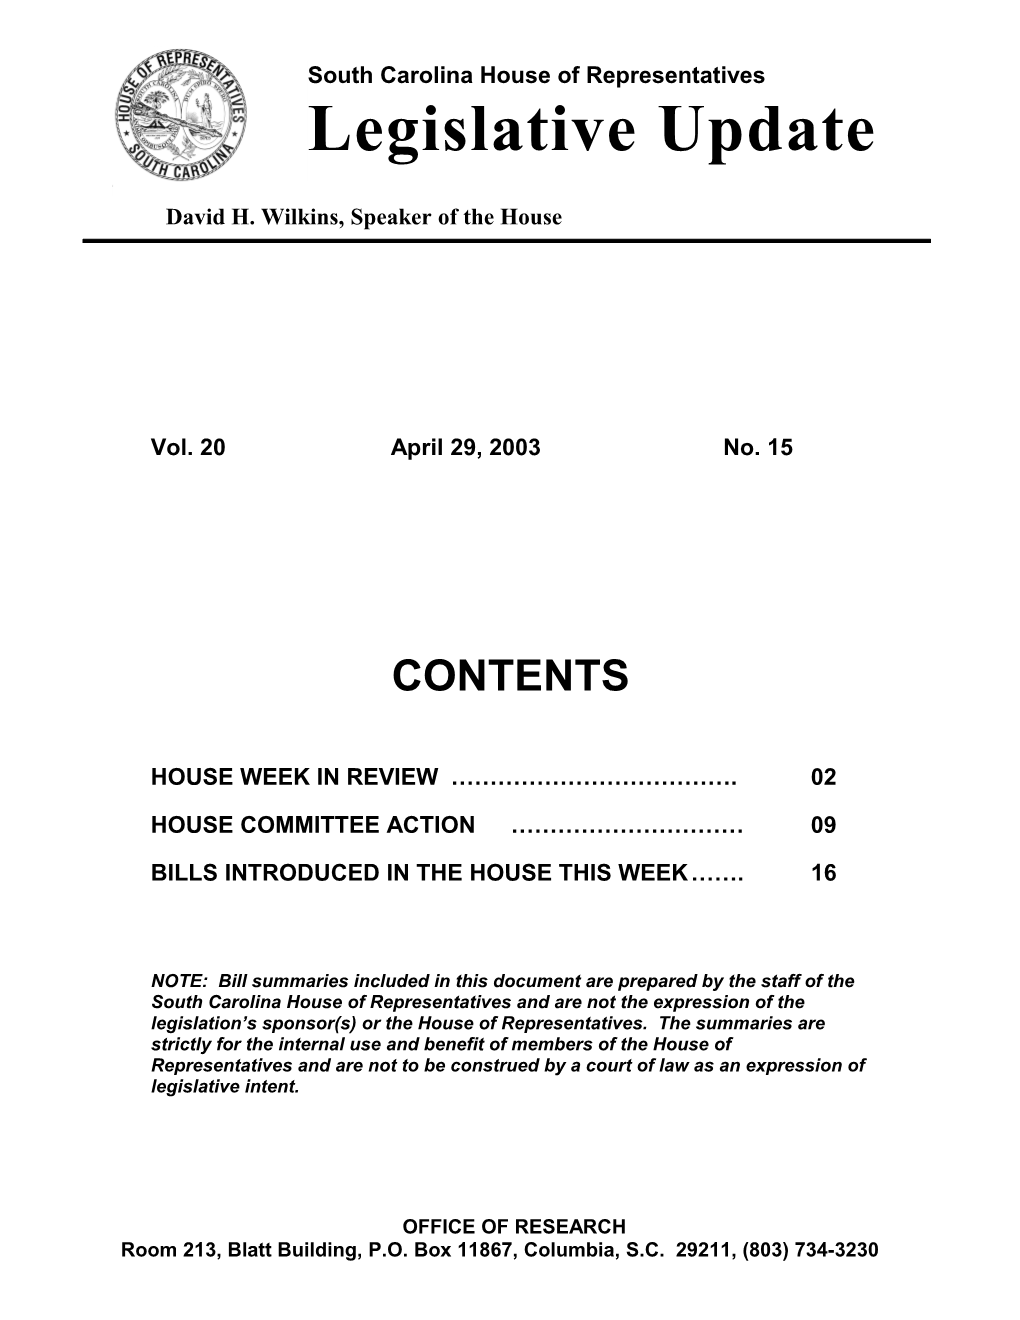 Legislative Update - Vol. 20 No. 15 April 29, 2003 - South Carolina Legislature Online